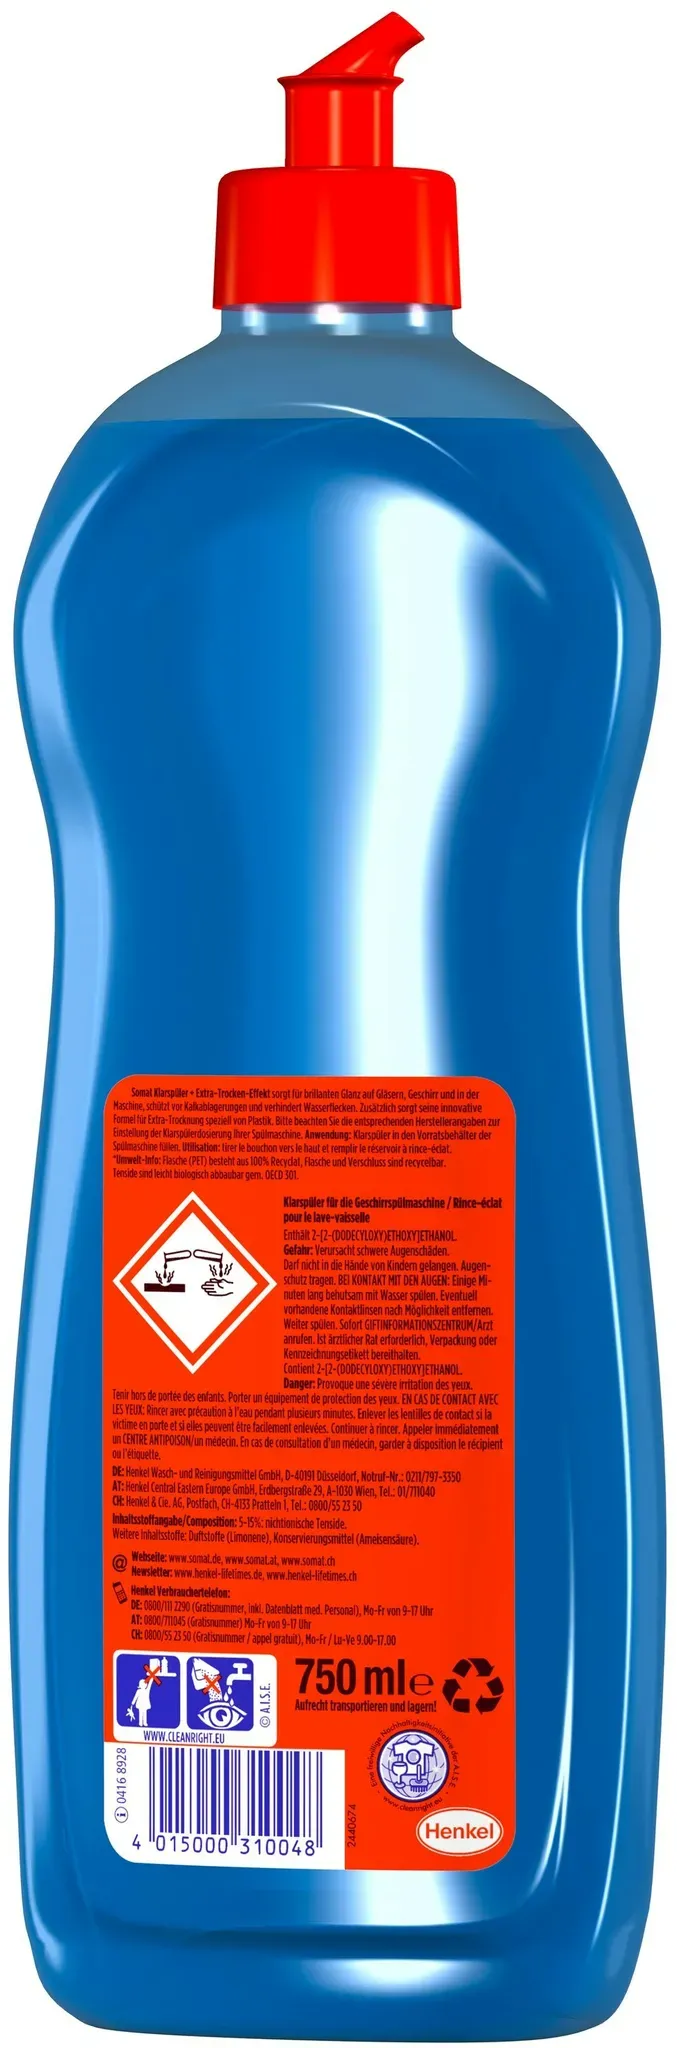 Somat Klarspüler Geschirrreiniger 750 ml Spülmaschinenreiniger Reinigung